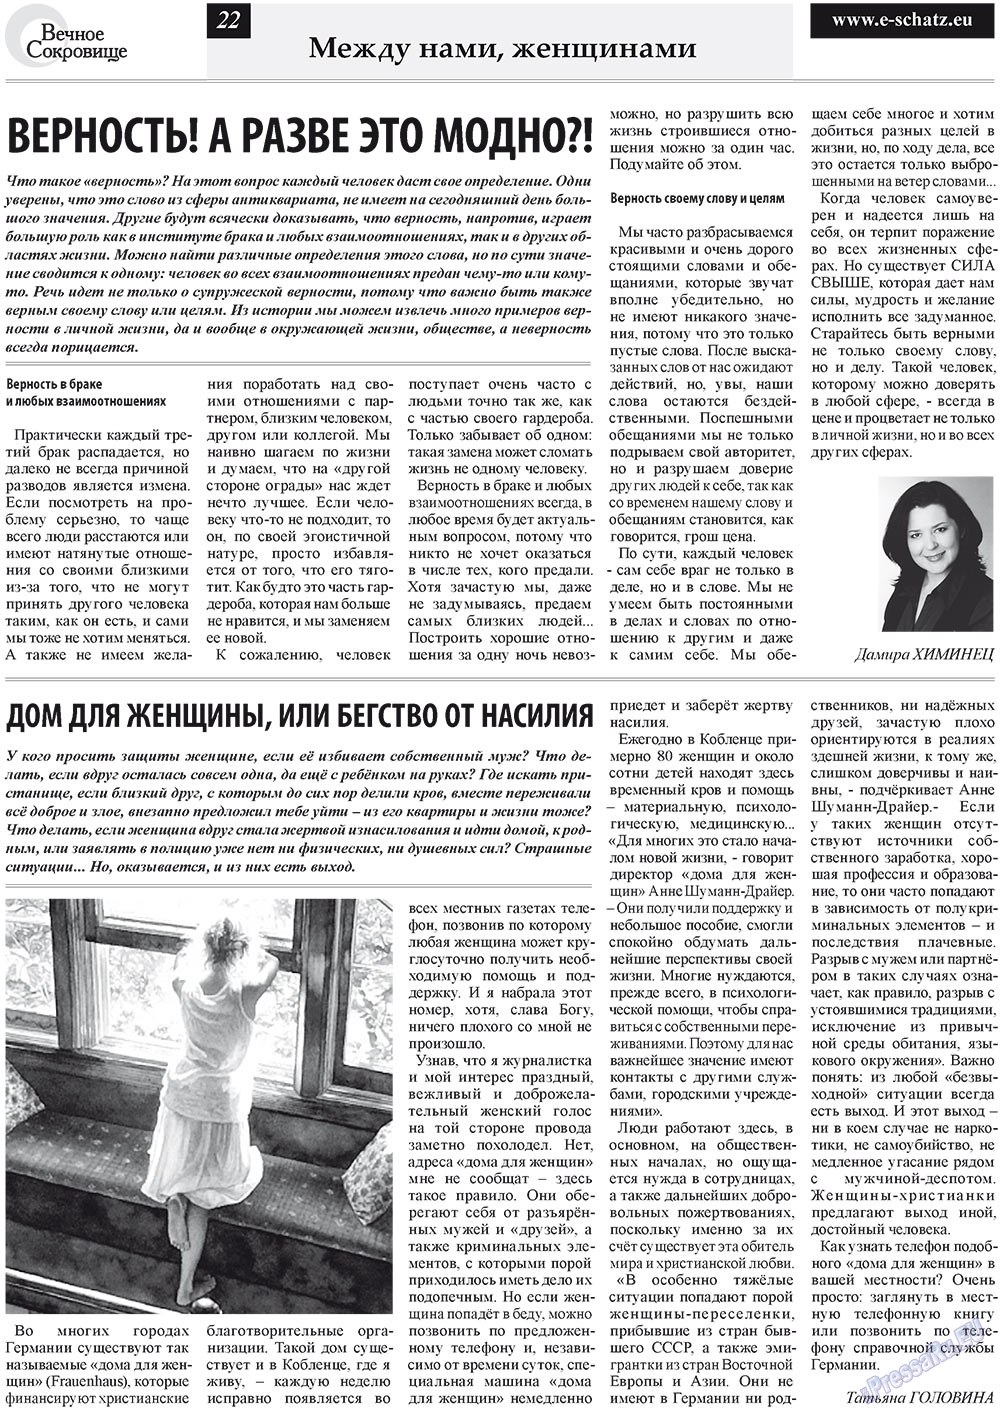 Вечное сокровище (газета). 2011 год, номер 3, стр. 22